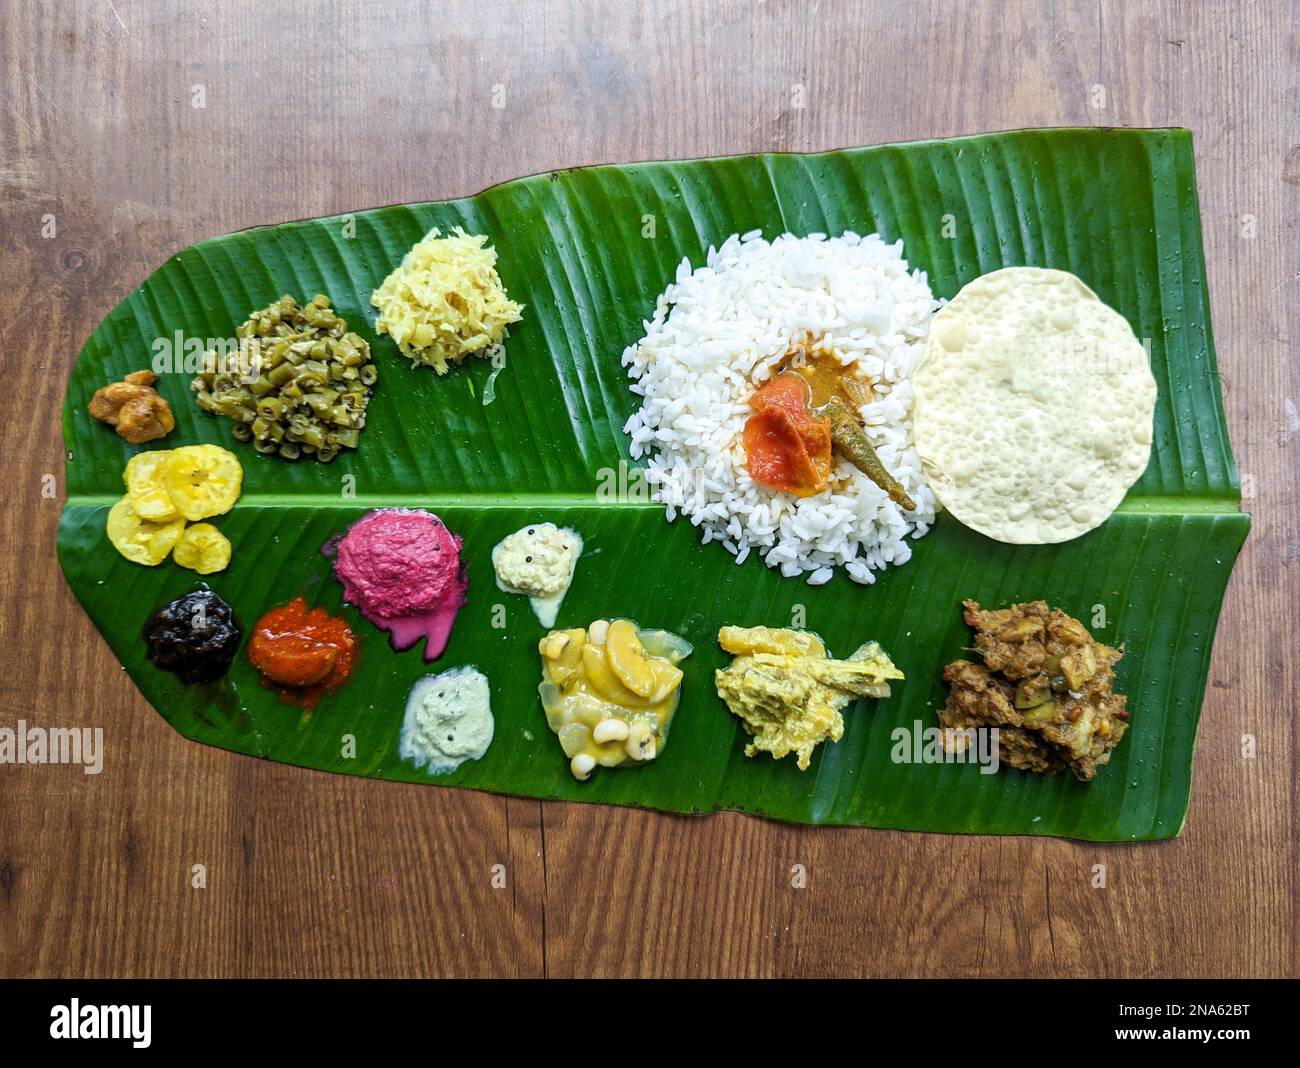 assiette de cuisine traditionnelle du sud de l'inde avec riz et autres plats variés servis dans une feuille de banane pour un festival ou une occasion Banque D'Images